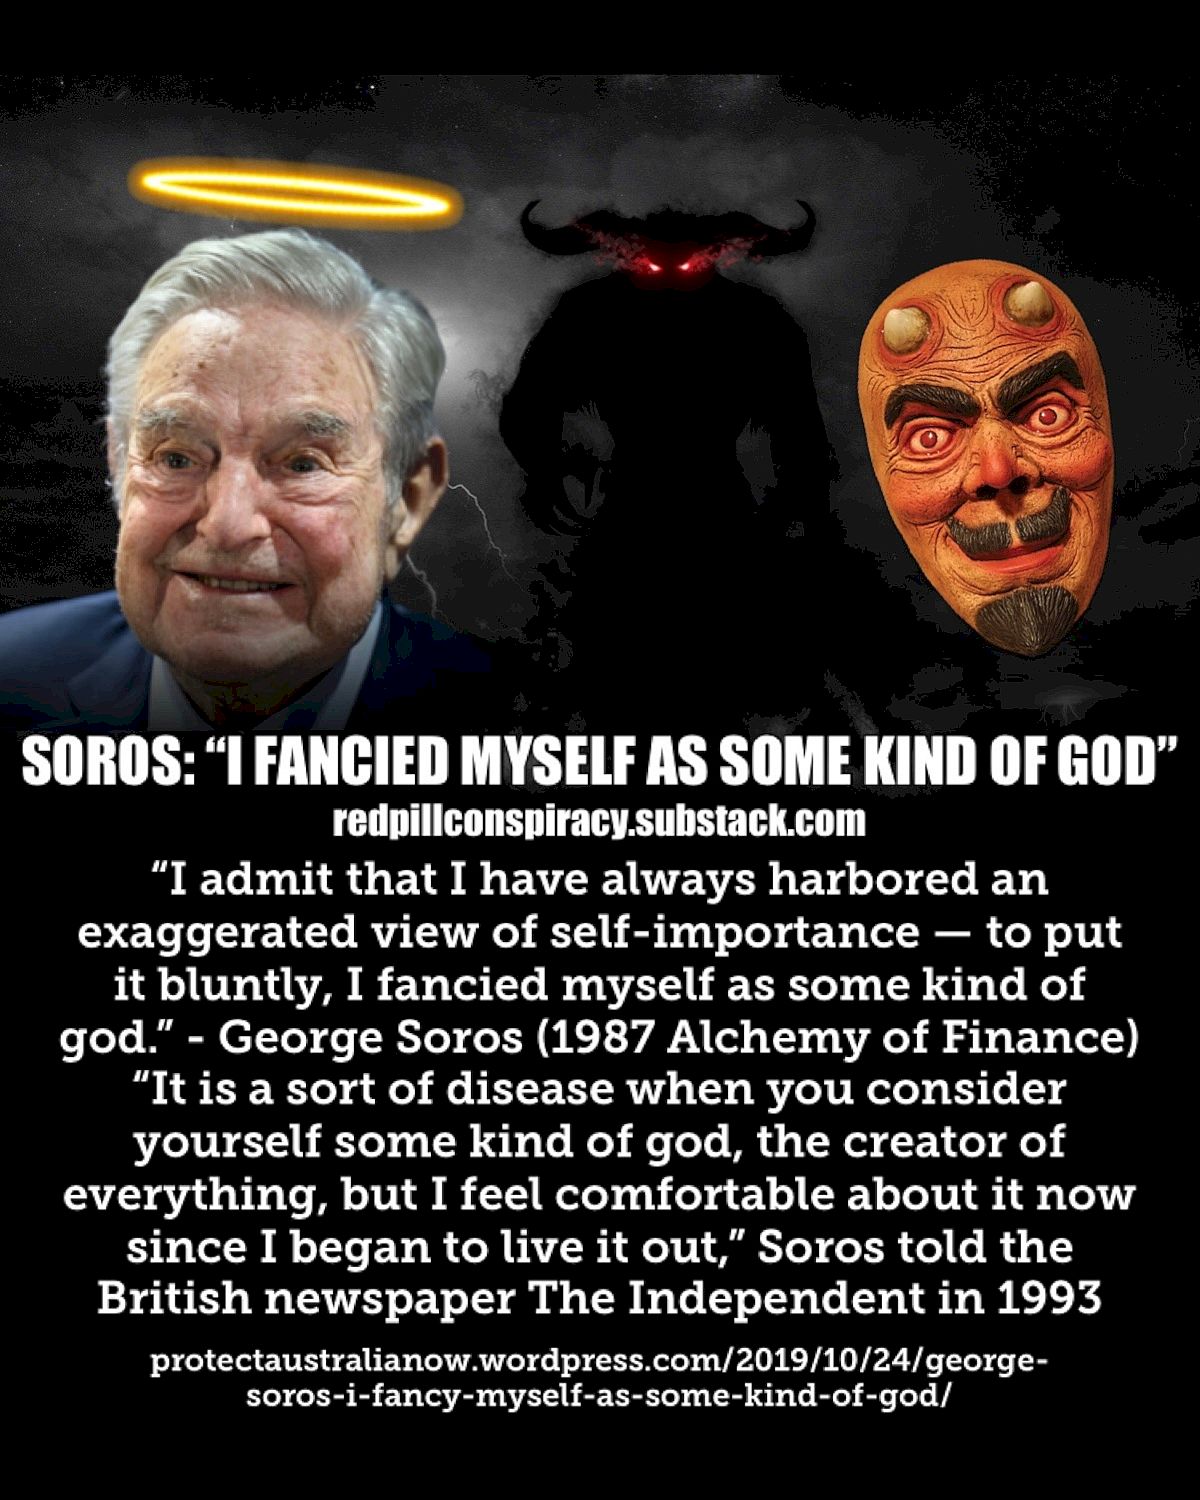 George Soros: "Ich hielt mich selbst für eine Art Gott"